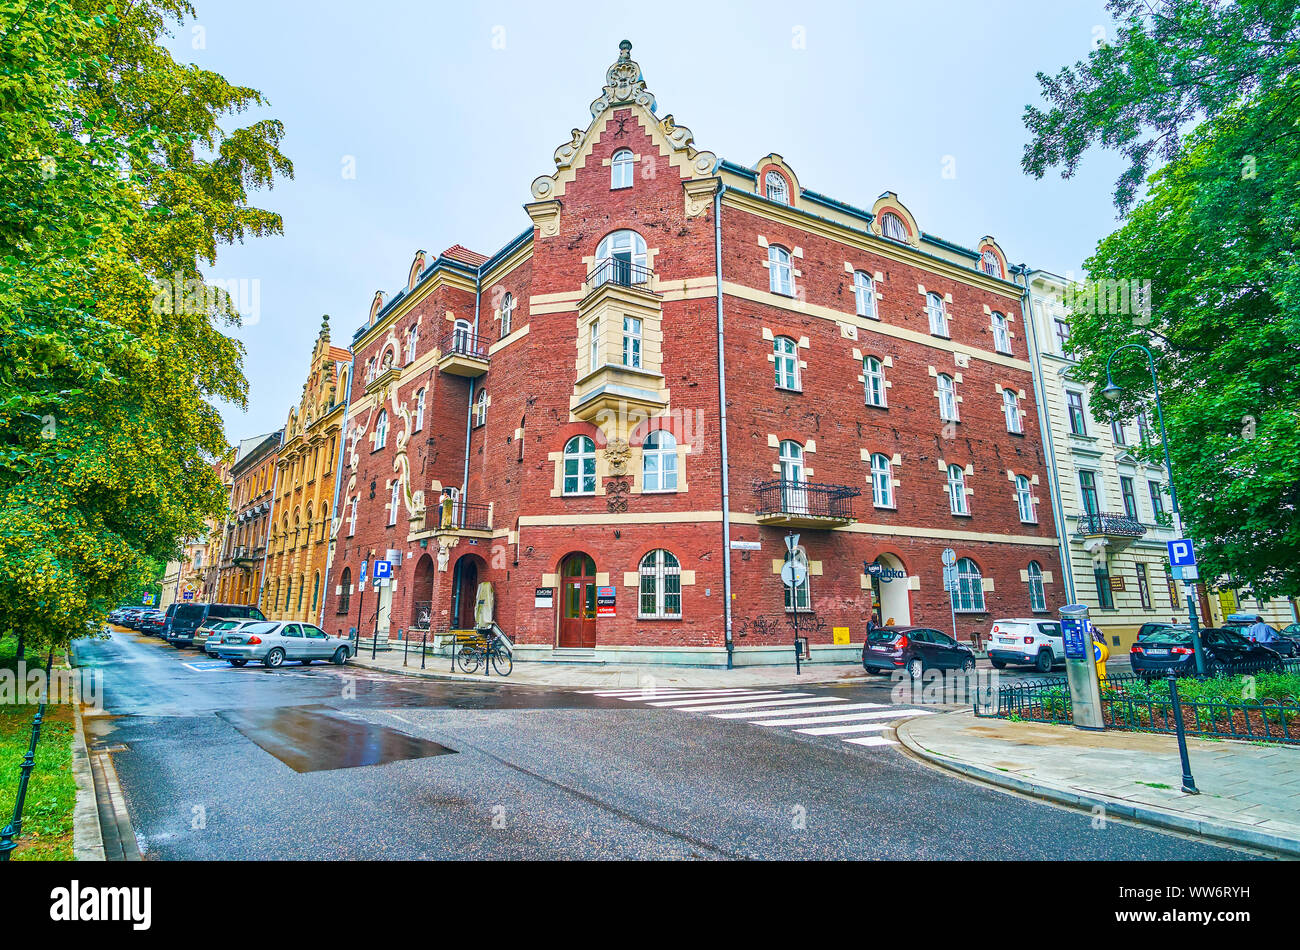 Cracovia in Polonia - giugno, 13, 2018: la vecchia magione, chiamato sotto il canto Frog si trova in un accogliente quartiere storico nei dintorni di verde Foto Stock